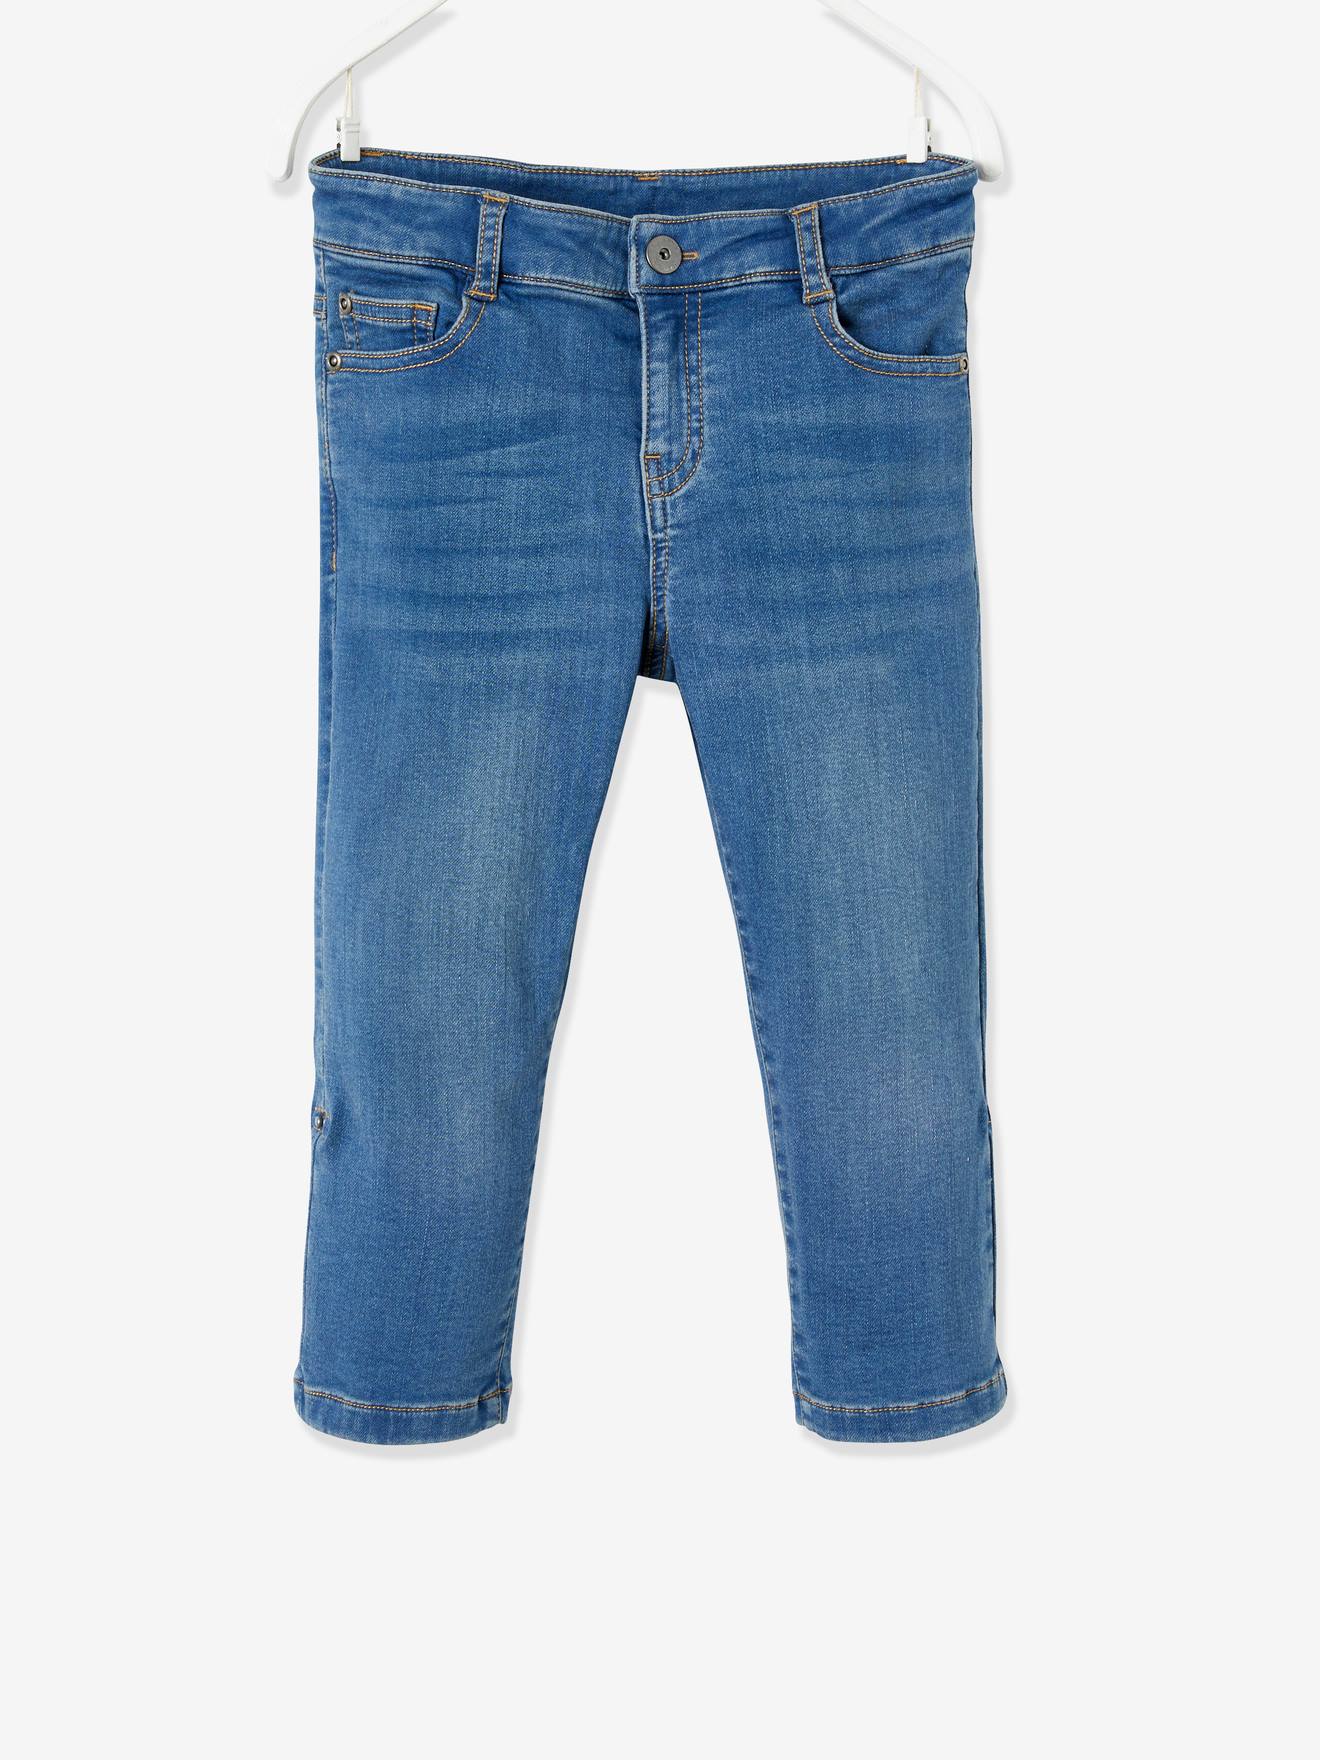 Jungen Bekleidung Hosen Jeans DE 110 s.Oliver Jungen Jeans Gr 